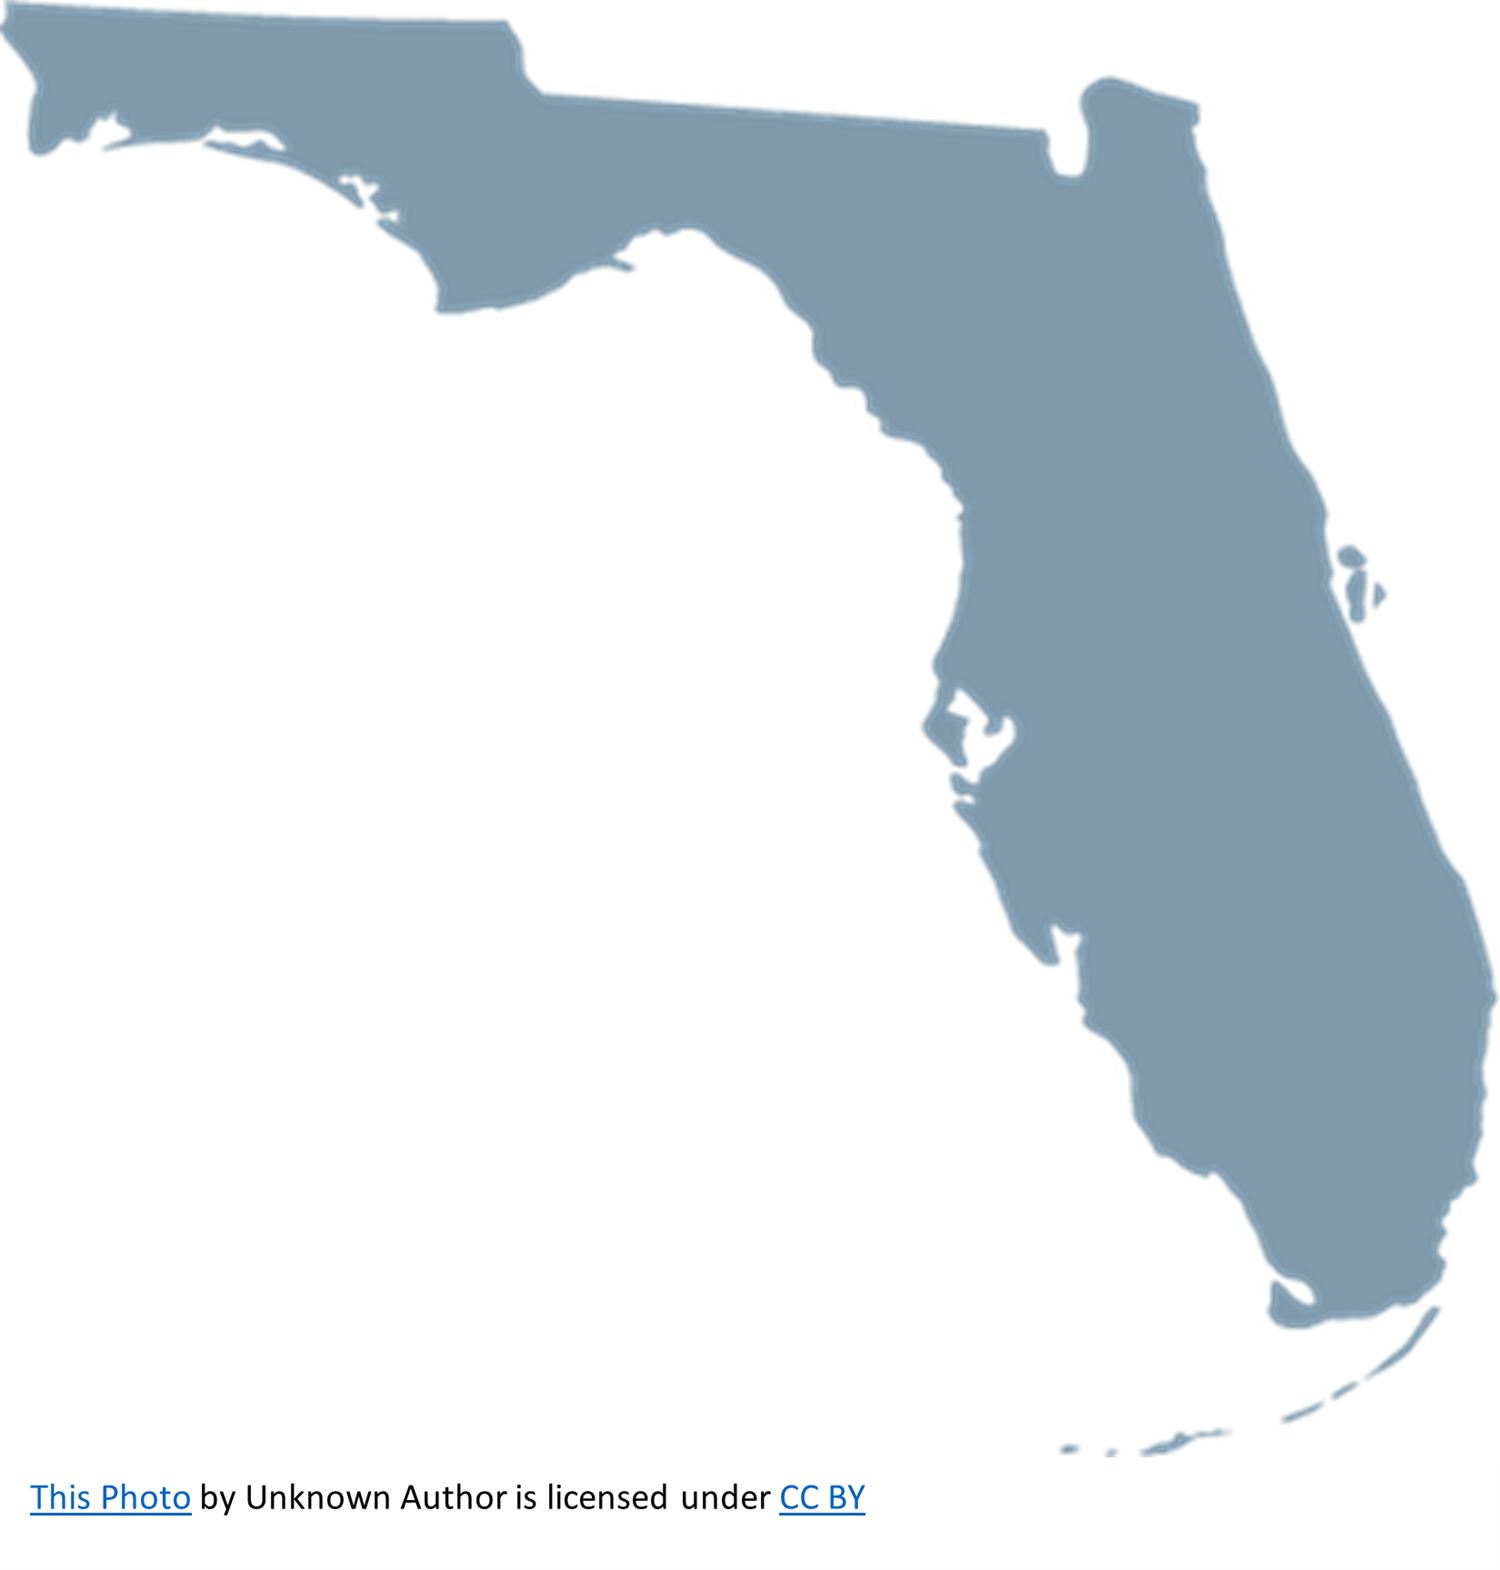 Florida South Bound 2023-2024 on juin 28, 10:00@Florida - Choisissez un siège,Achetez des billets et obtenez des informations surCrossroad Tours Inc. crossroadtours